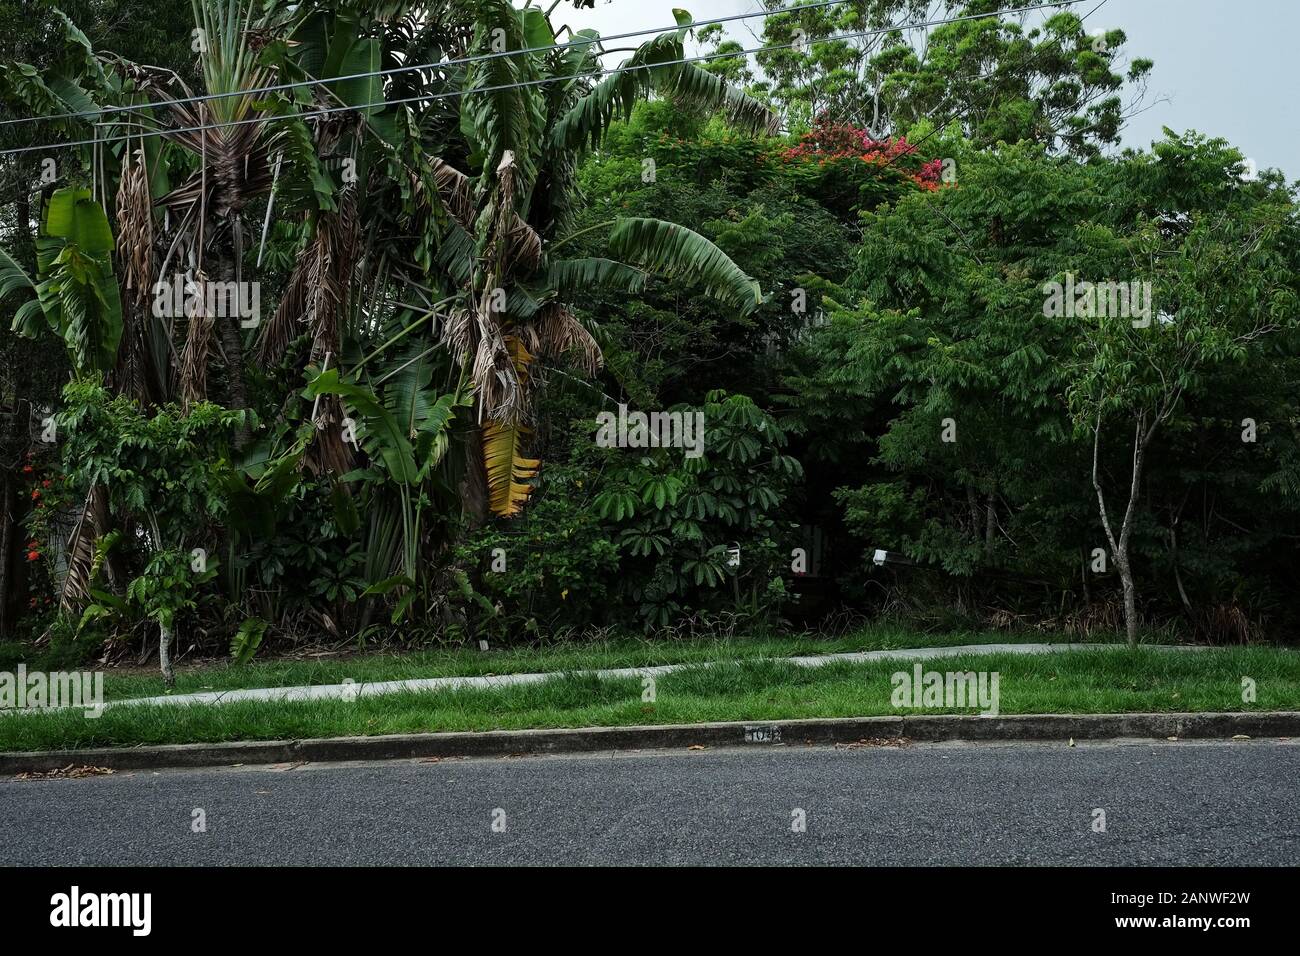 Une cour avant envahie un mur de feuillage vert luxuriant, palmiers, arbustes et arbres bloquent la maison de la rue, à Seven Hills, Brisbane, Australie Banque D'Images